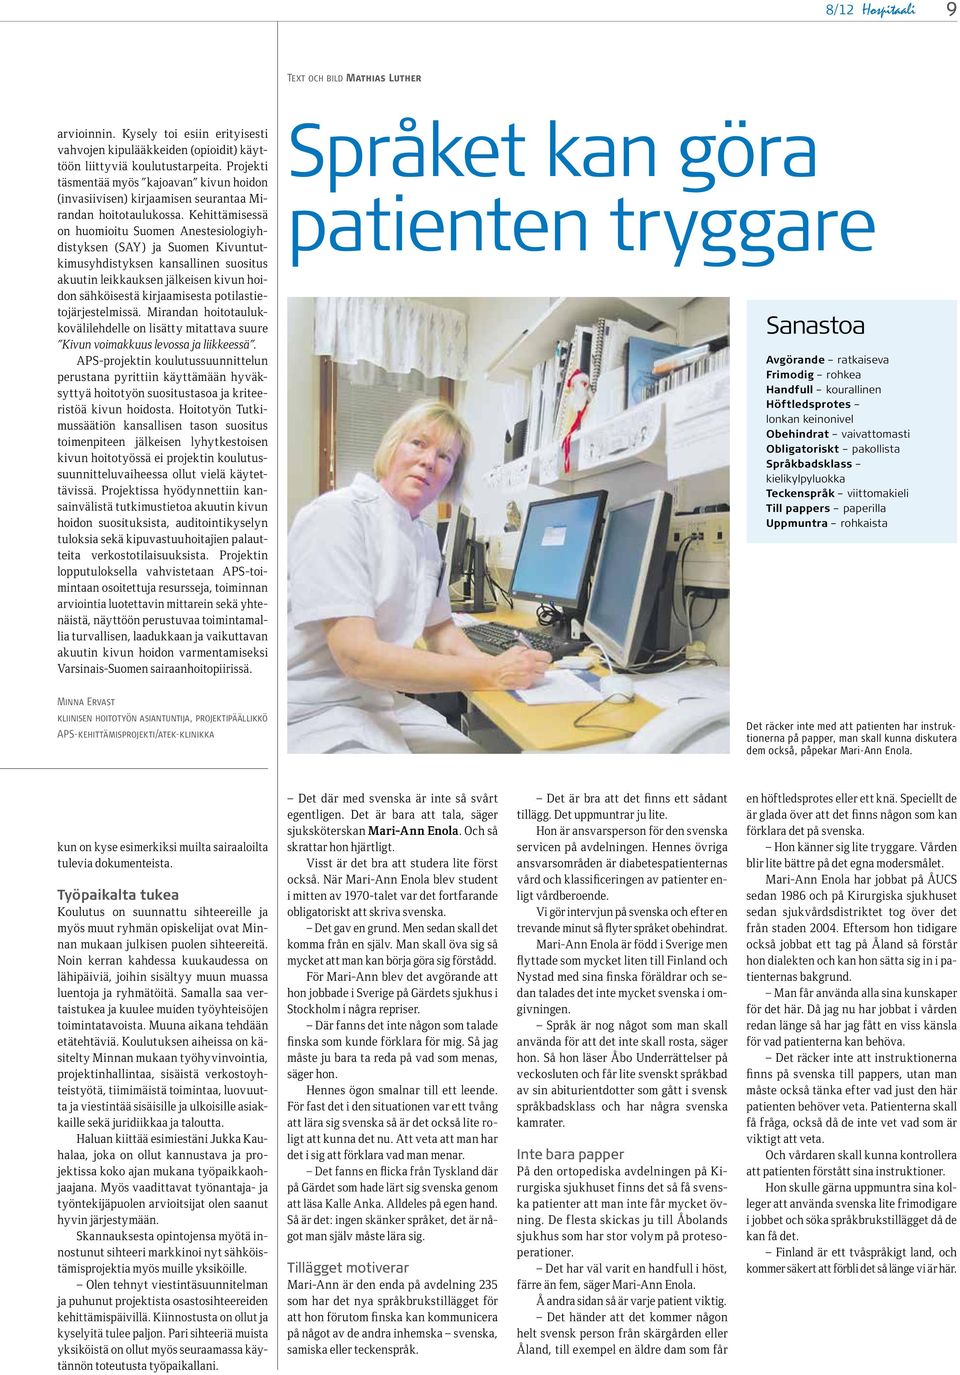 Kehittämisessä on huomioitu Suomen Anestesiologiyhdistyksen (SAY) ja Suomen Kivuntutkimusyhdistyksen kansallinen suositus akuutin leikkauksen jälkeisen kivun hoidon sähköisestä kirjaamisesta